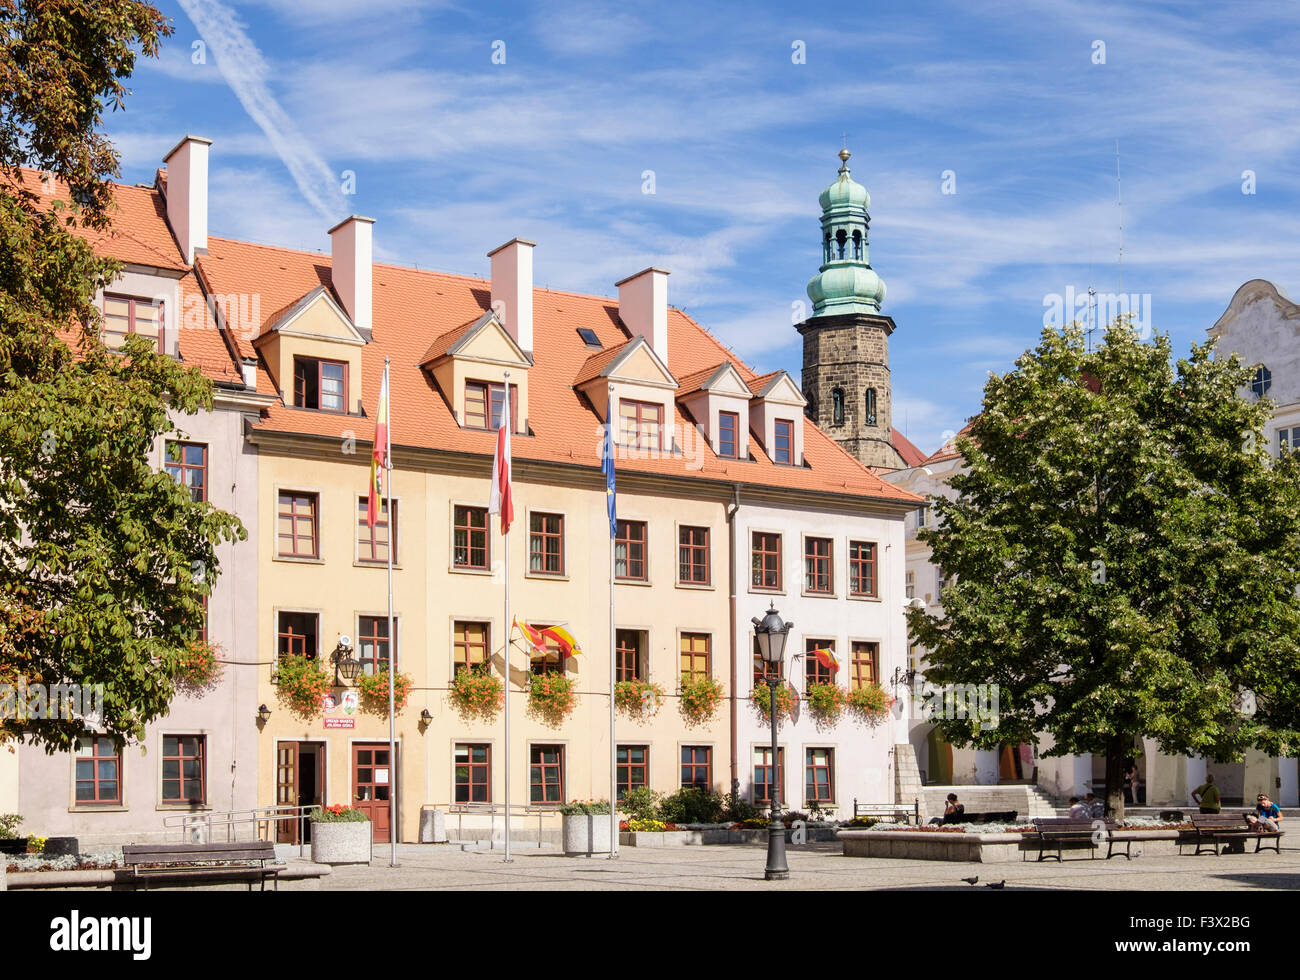 Las siete casas que ahora forma parte del Ayuntamiento en el Plac Ratuszowy o Plaza del Ayuntamiento Jelenia Gora o Hirschberg Baja Silesia Polonia Foto de stock